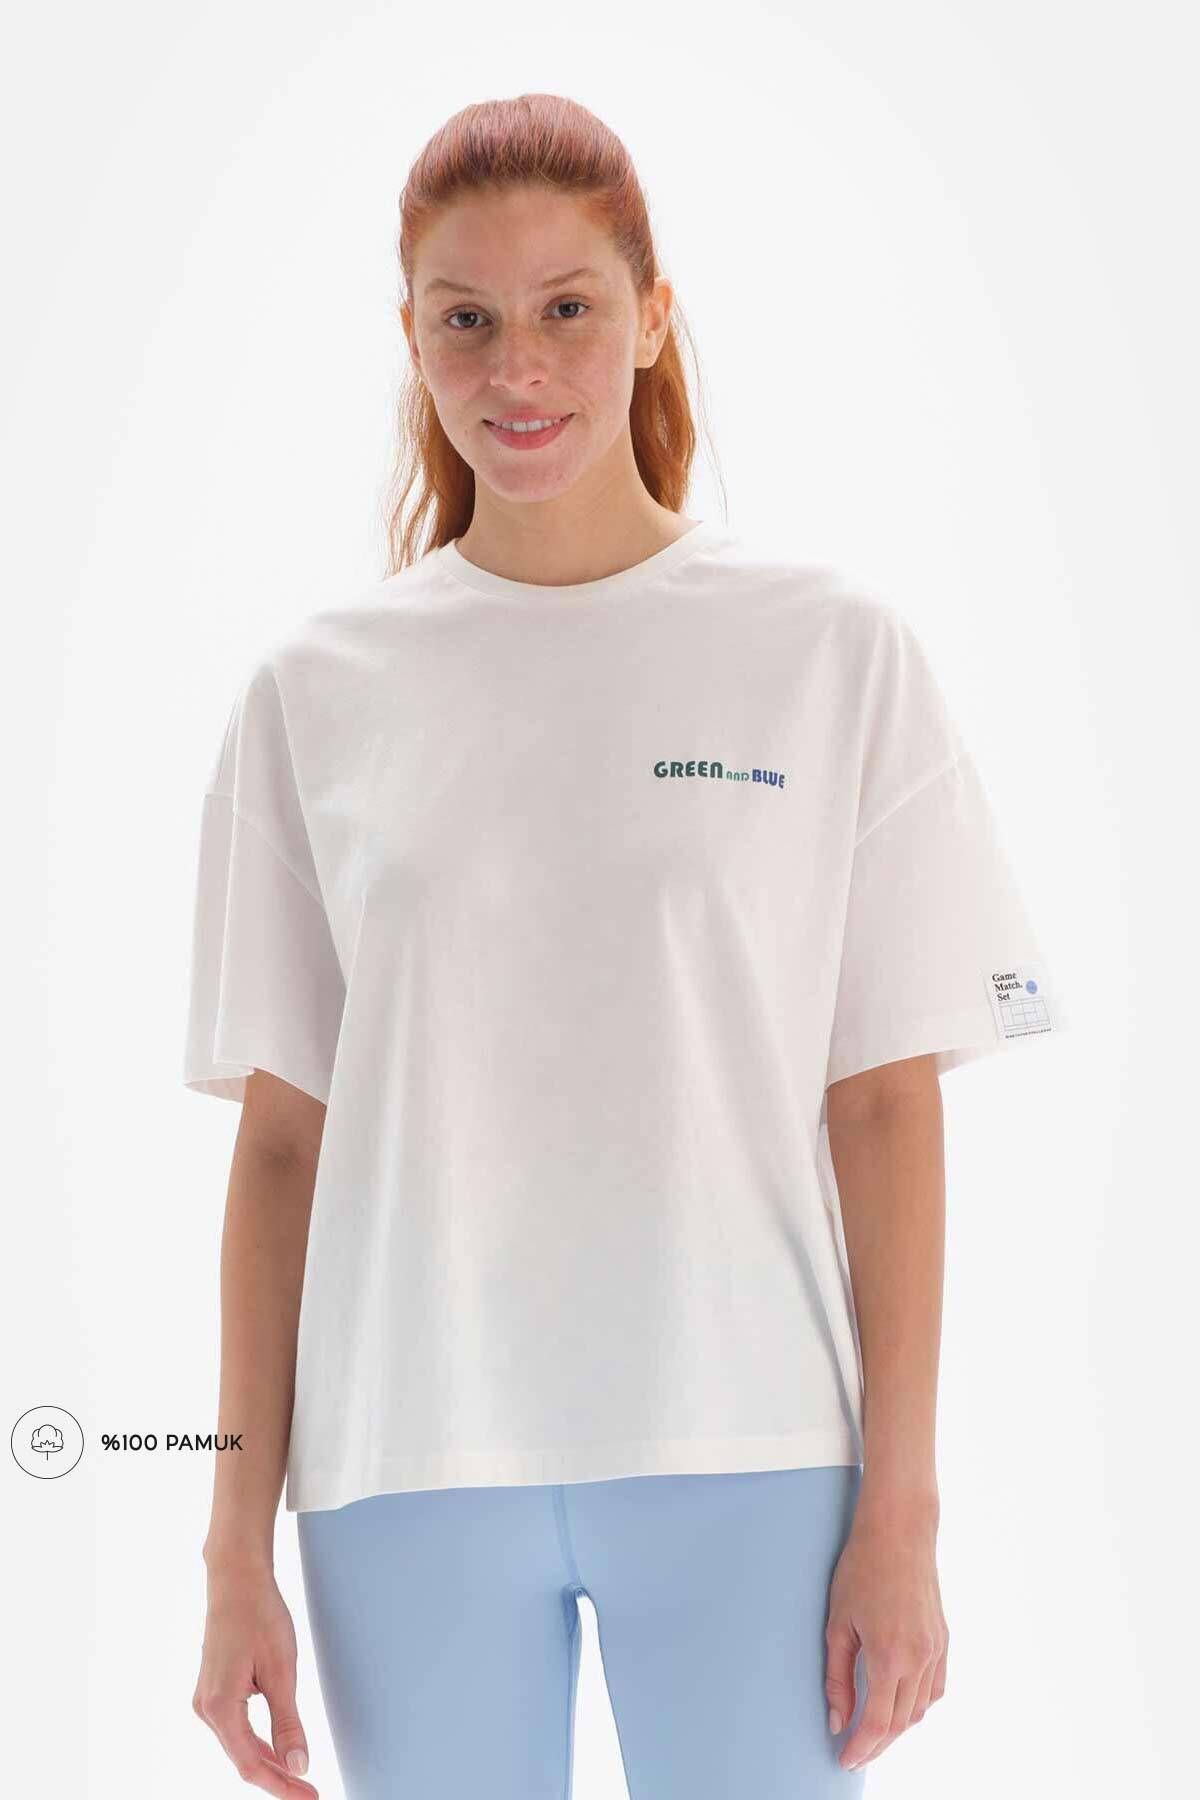 Dagi Beyaz - Mavi Kadın Kort Baskılı Tişört